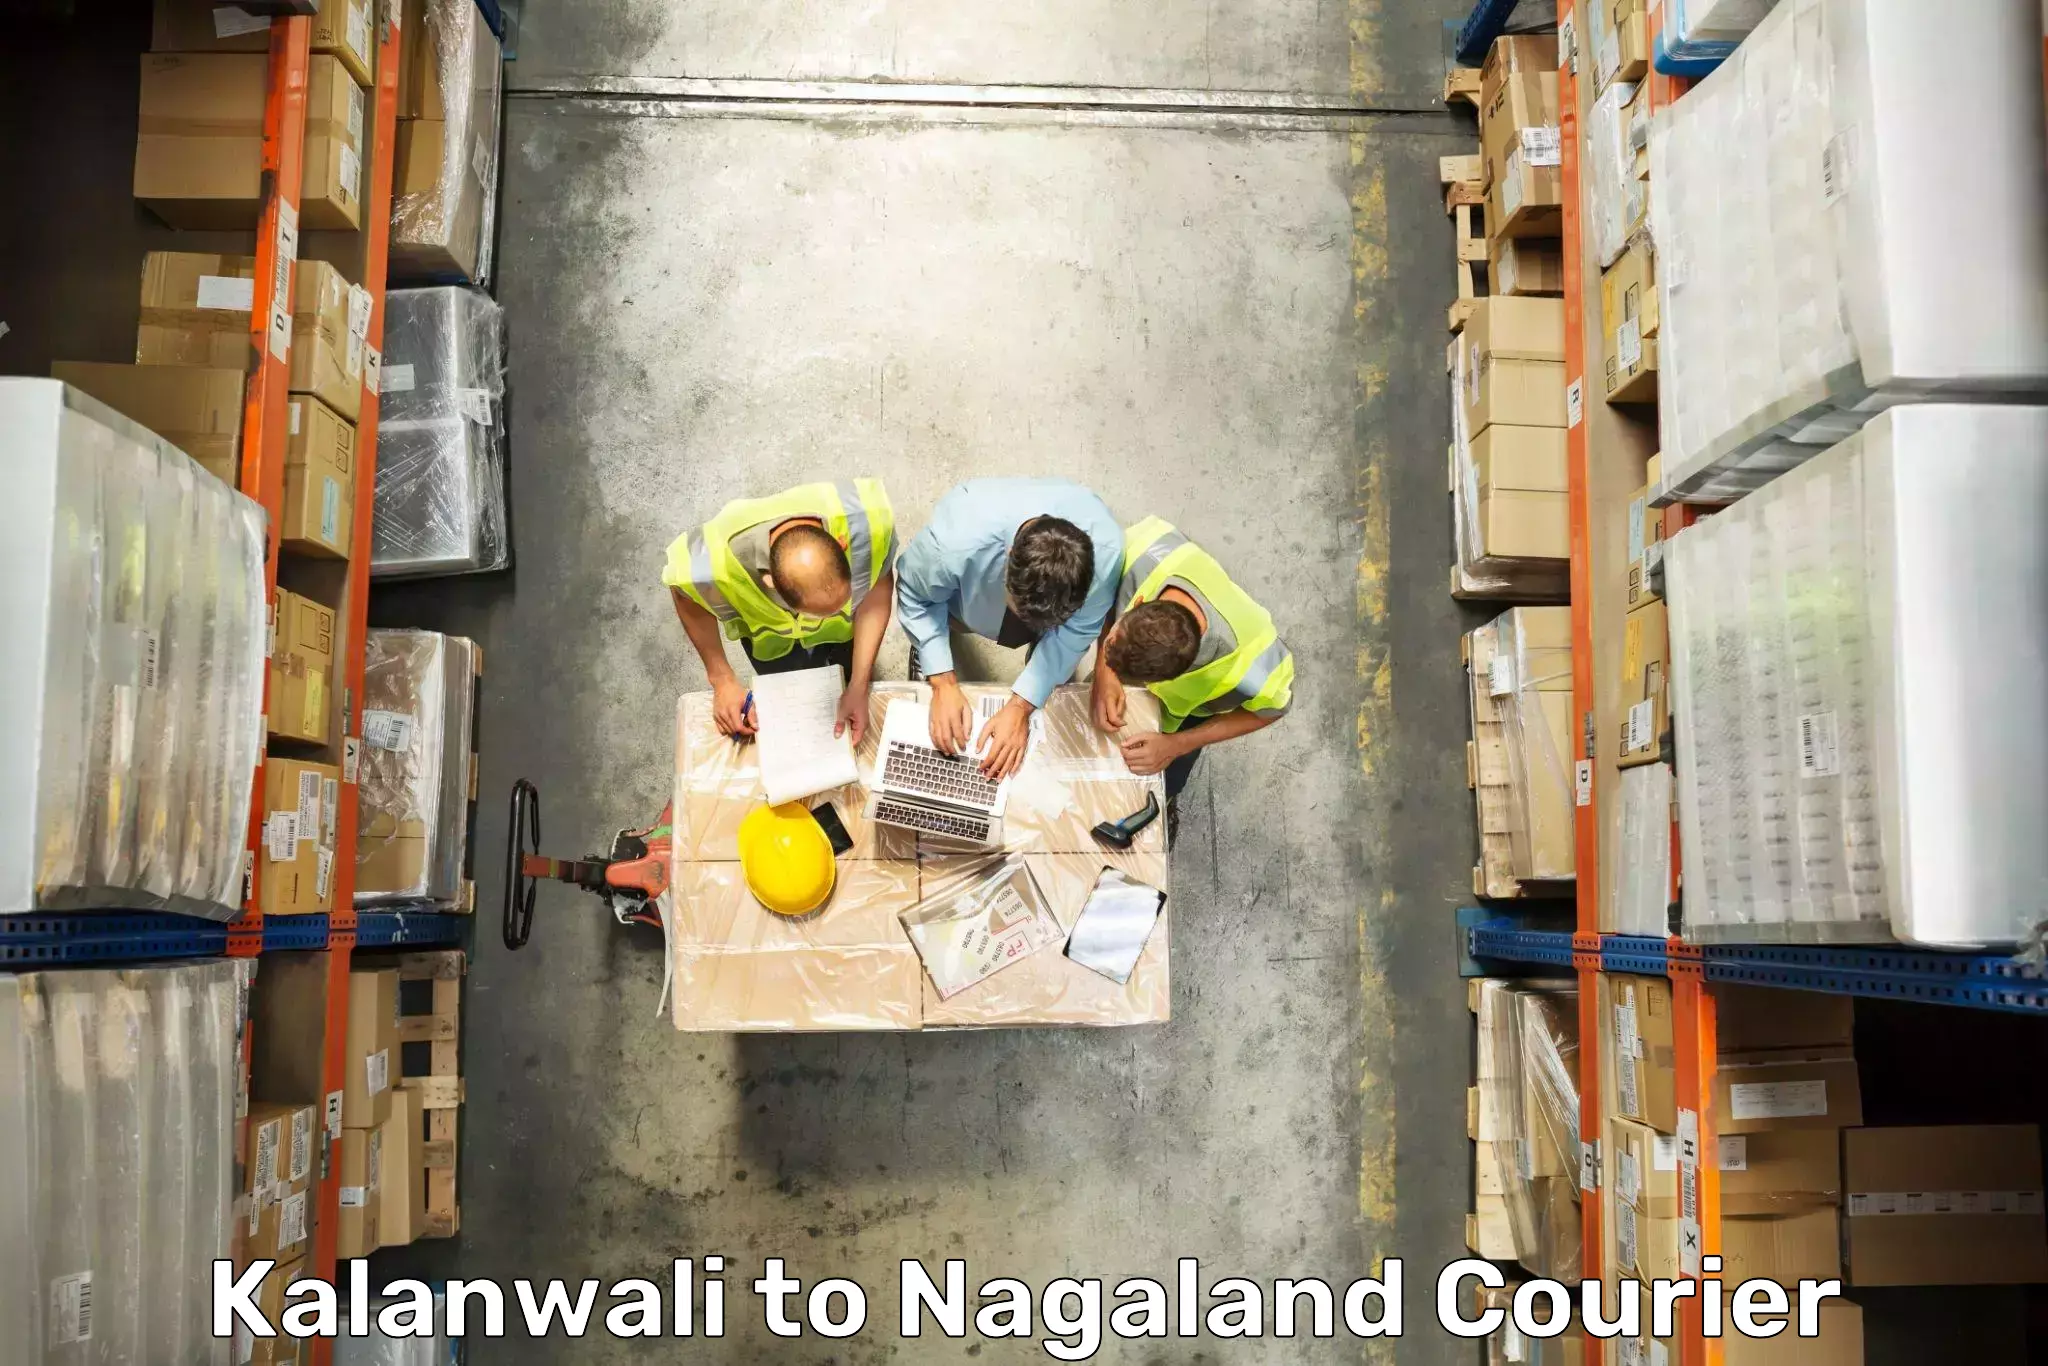 Baggage relocation service Kalanwali to Nagaland